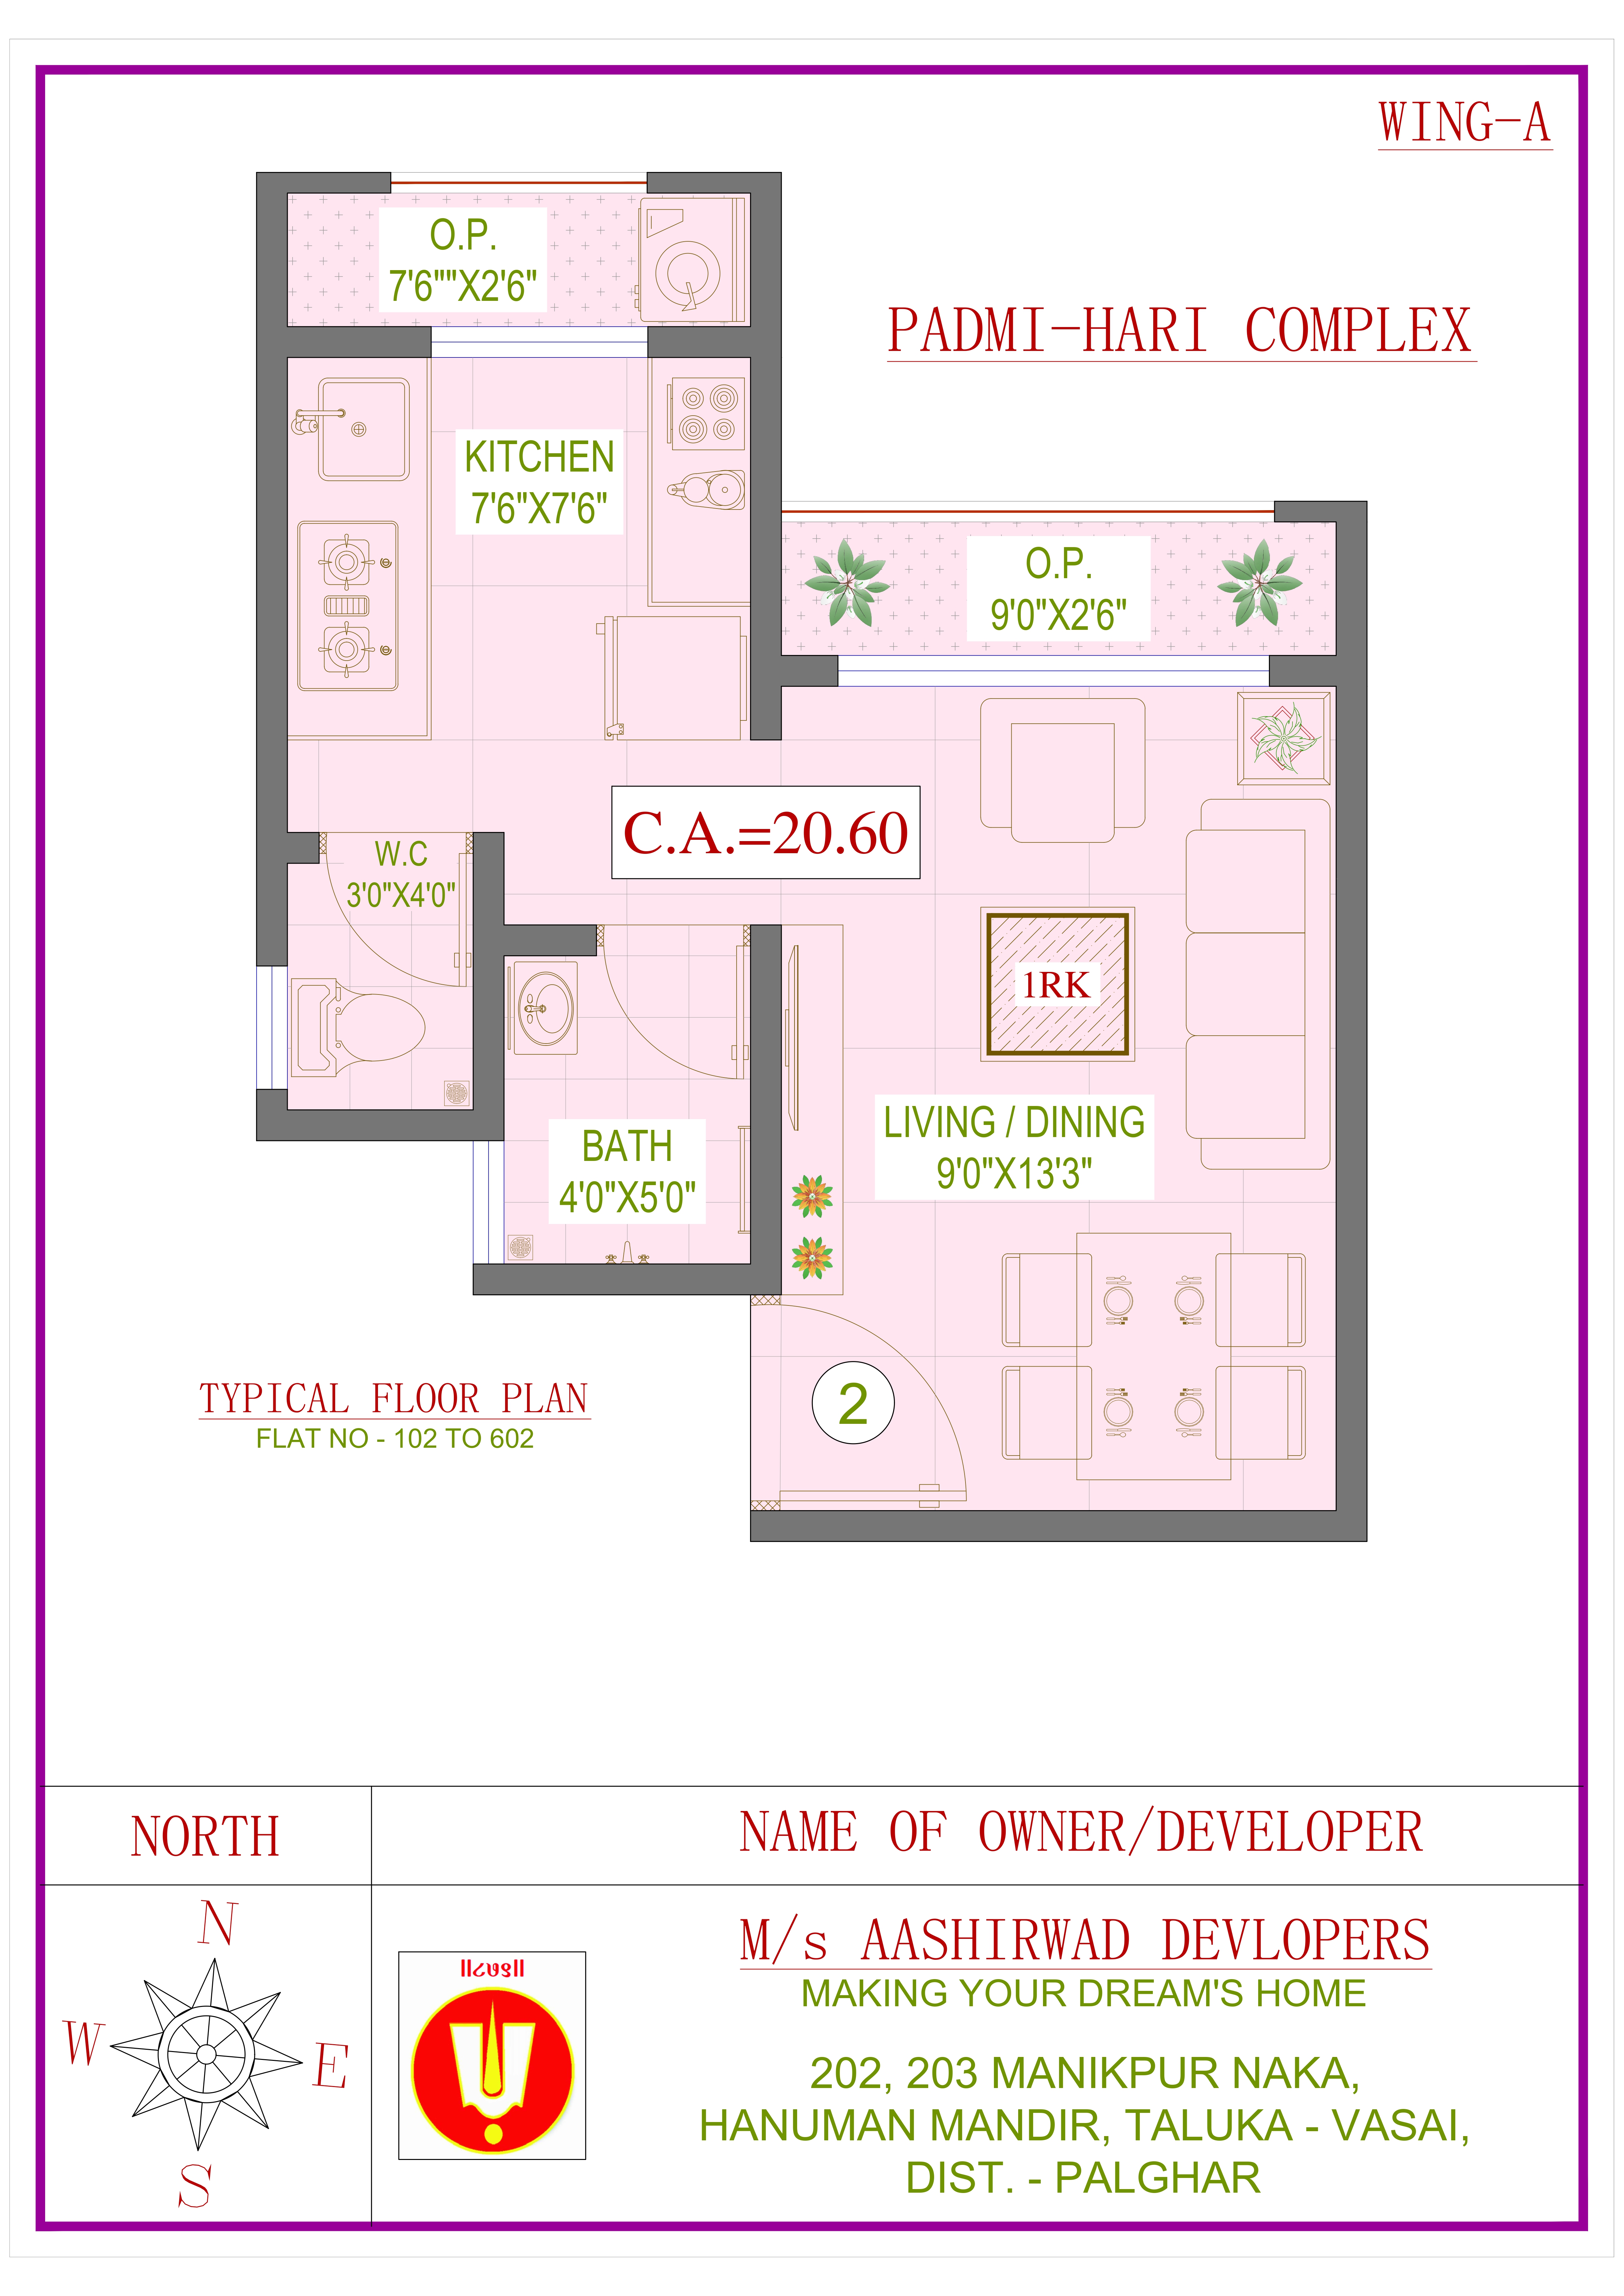 floor plan of padmahari complex